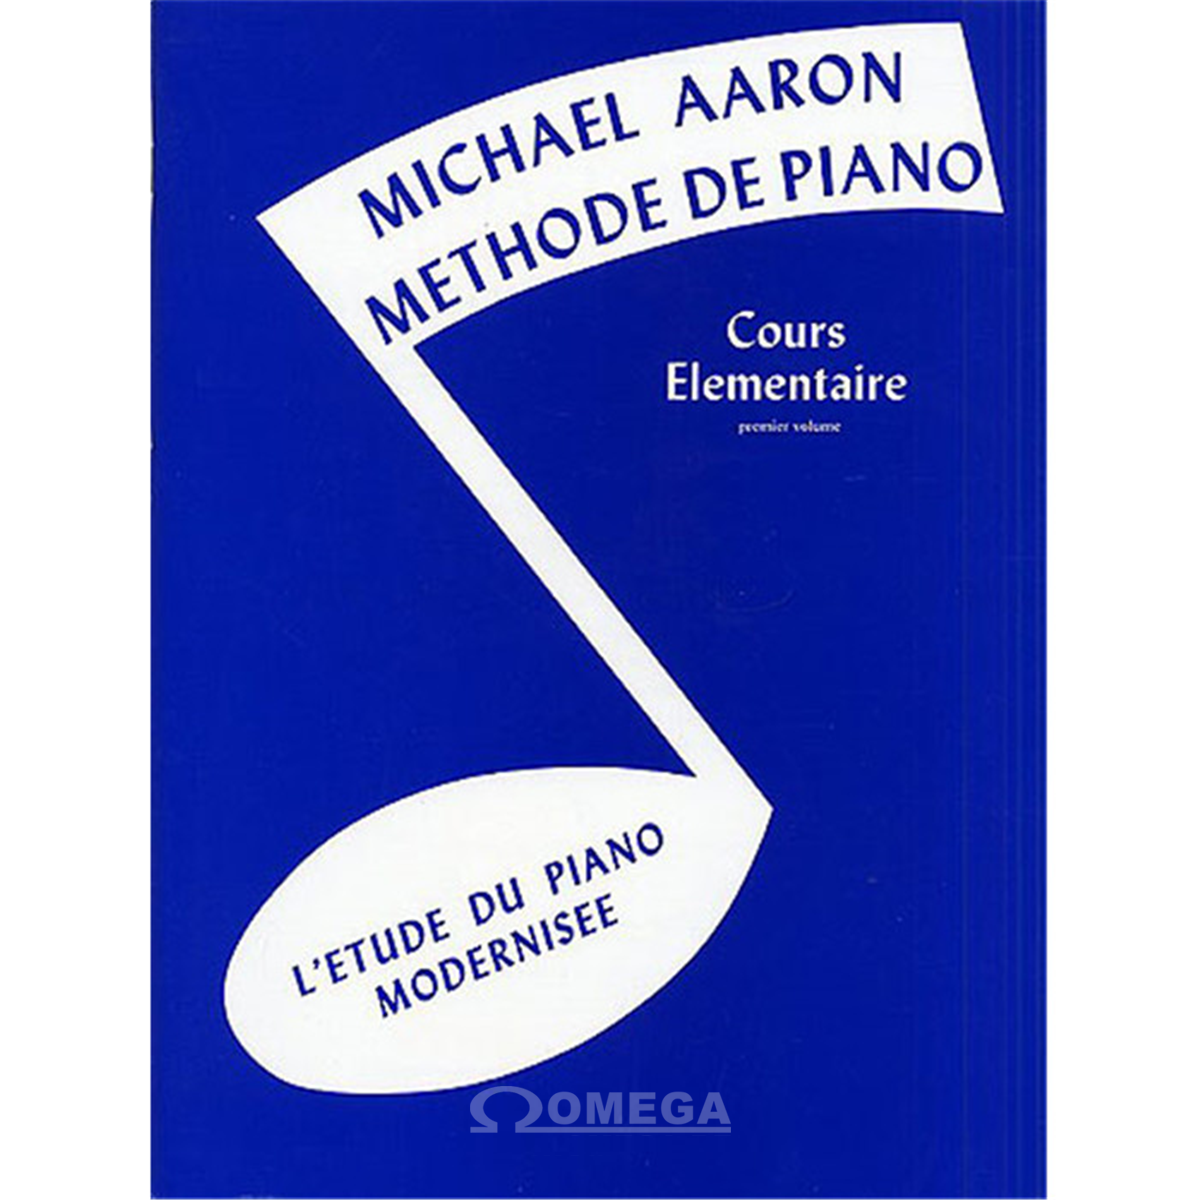 AARON Michel Méthode de Piano Cours Elémentaire Vol.1